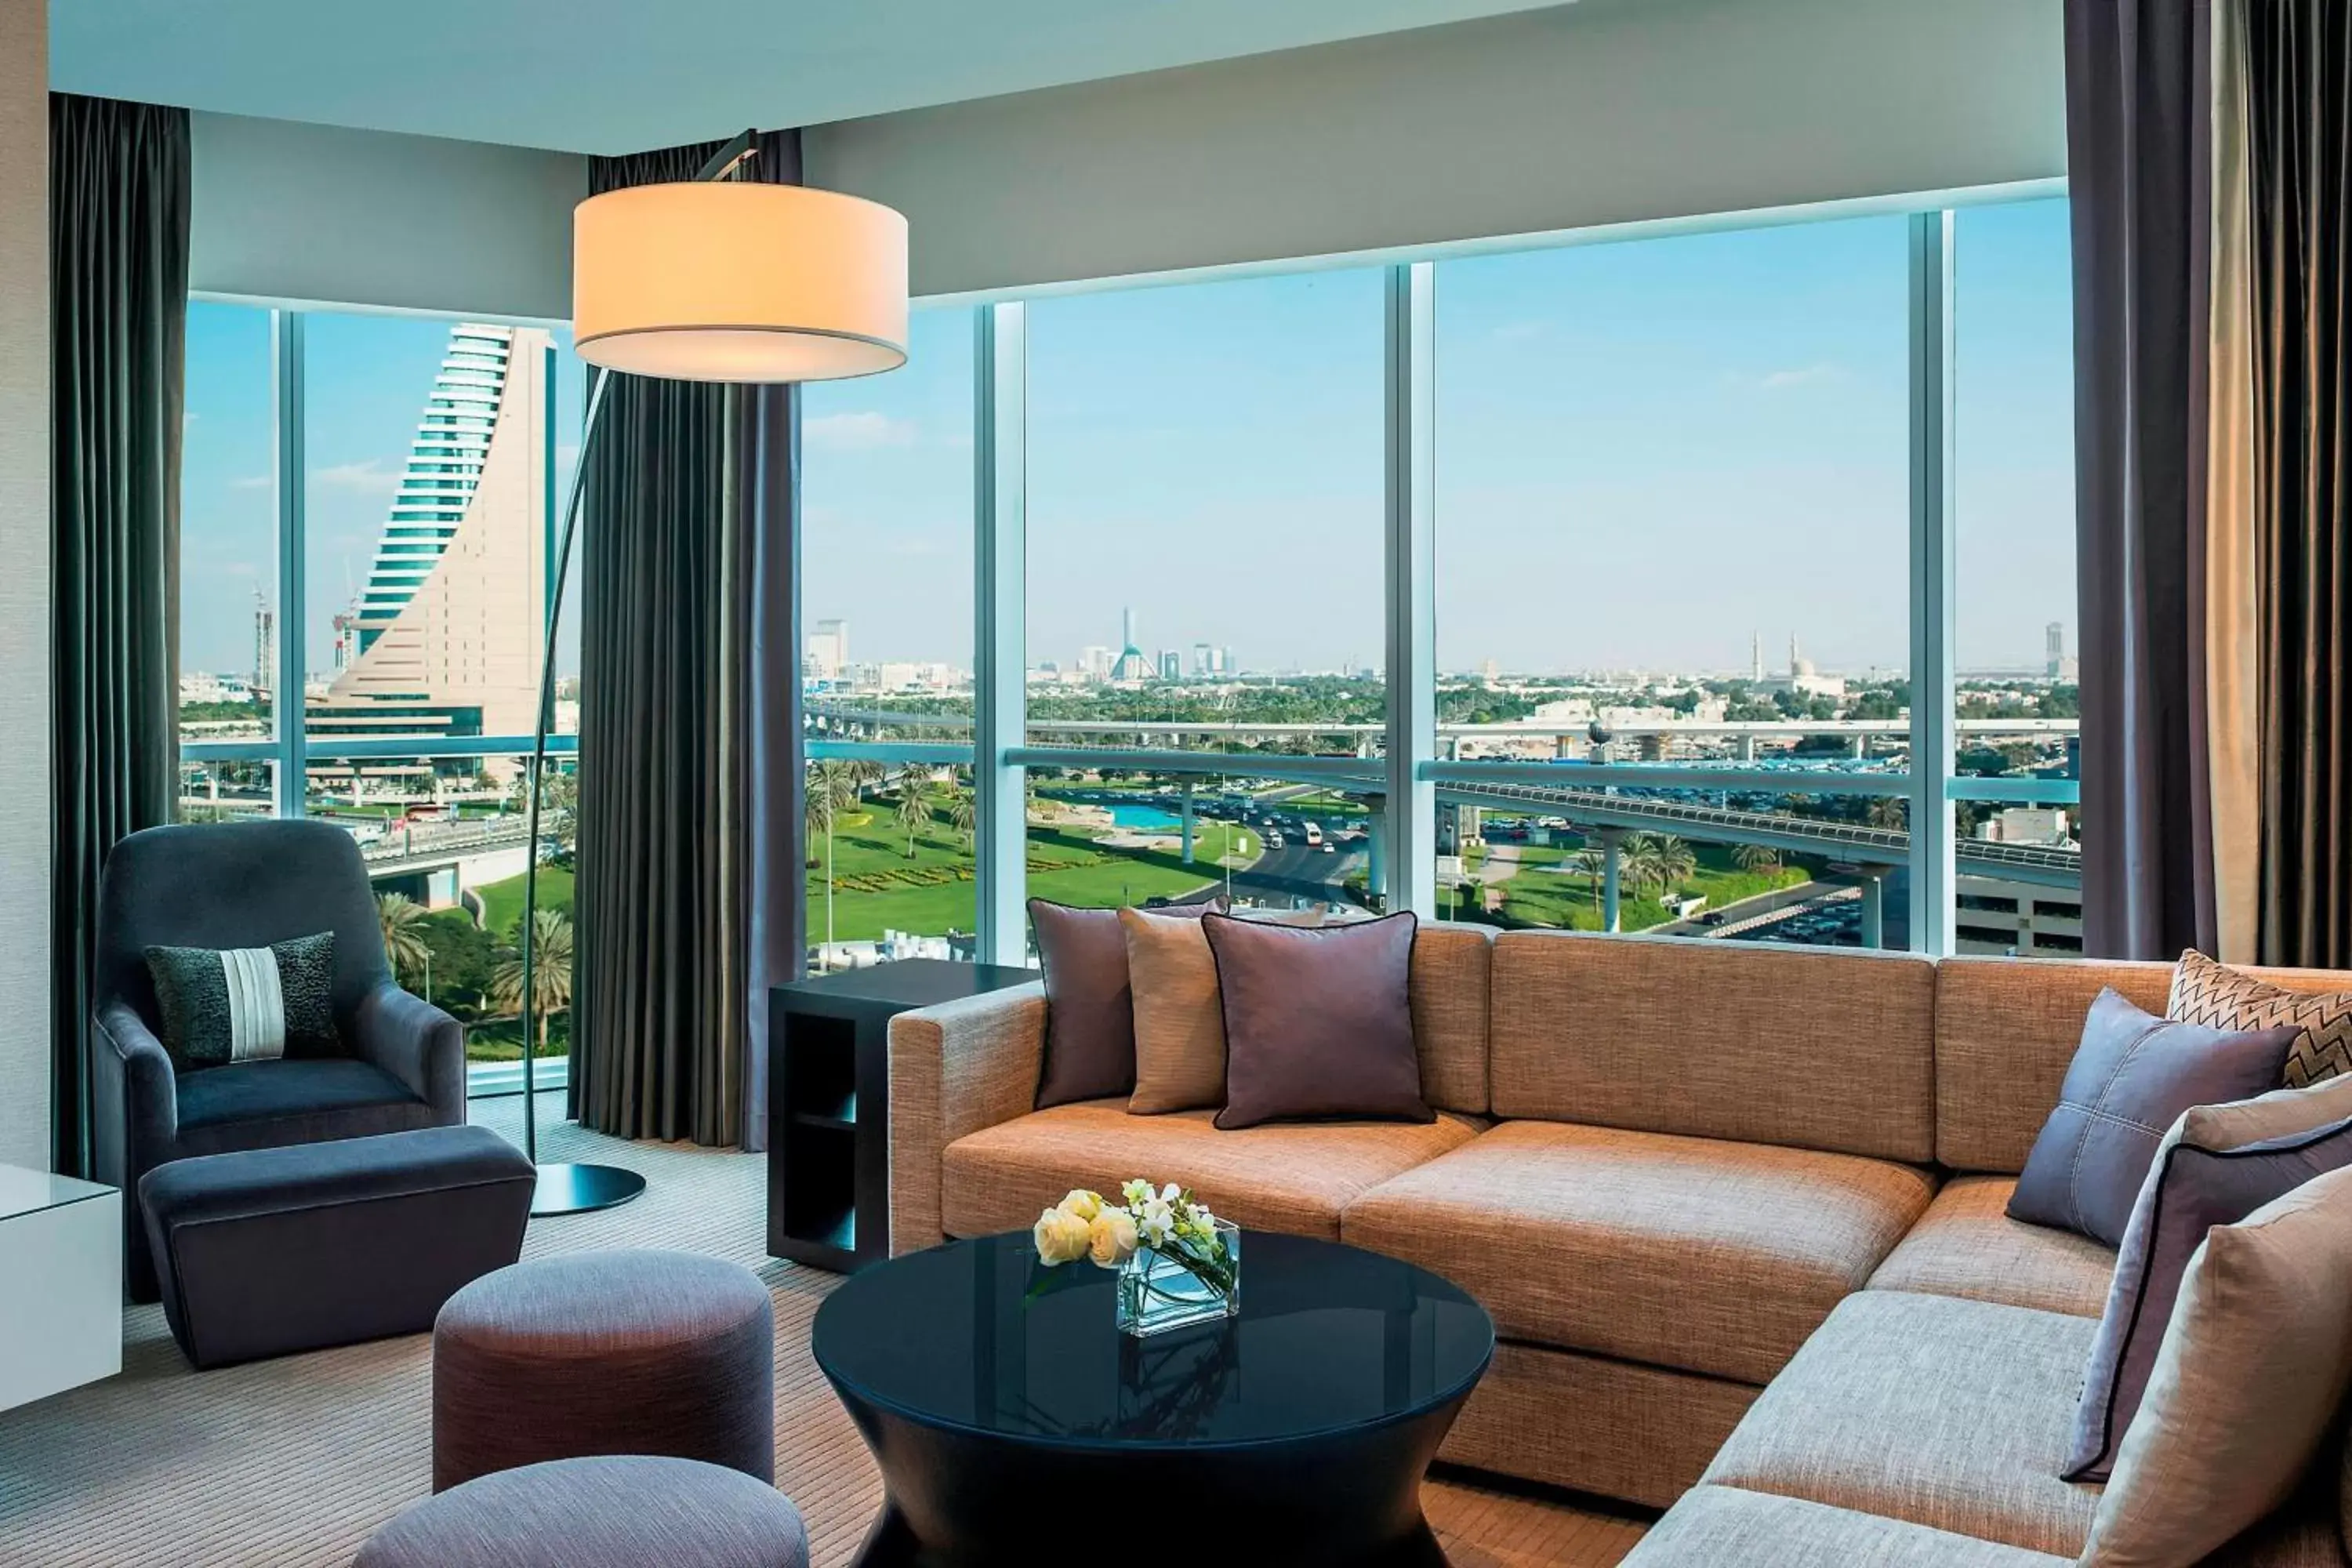 Lounge or bar, Seating Area in Sheraton Grand Hotel, Dubai